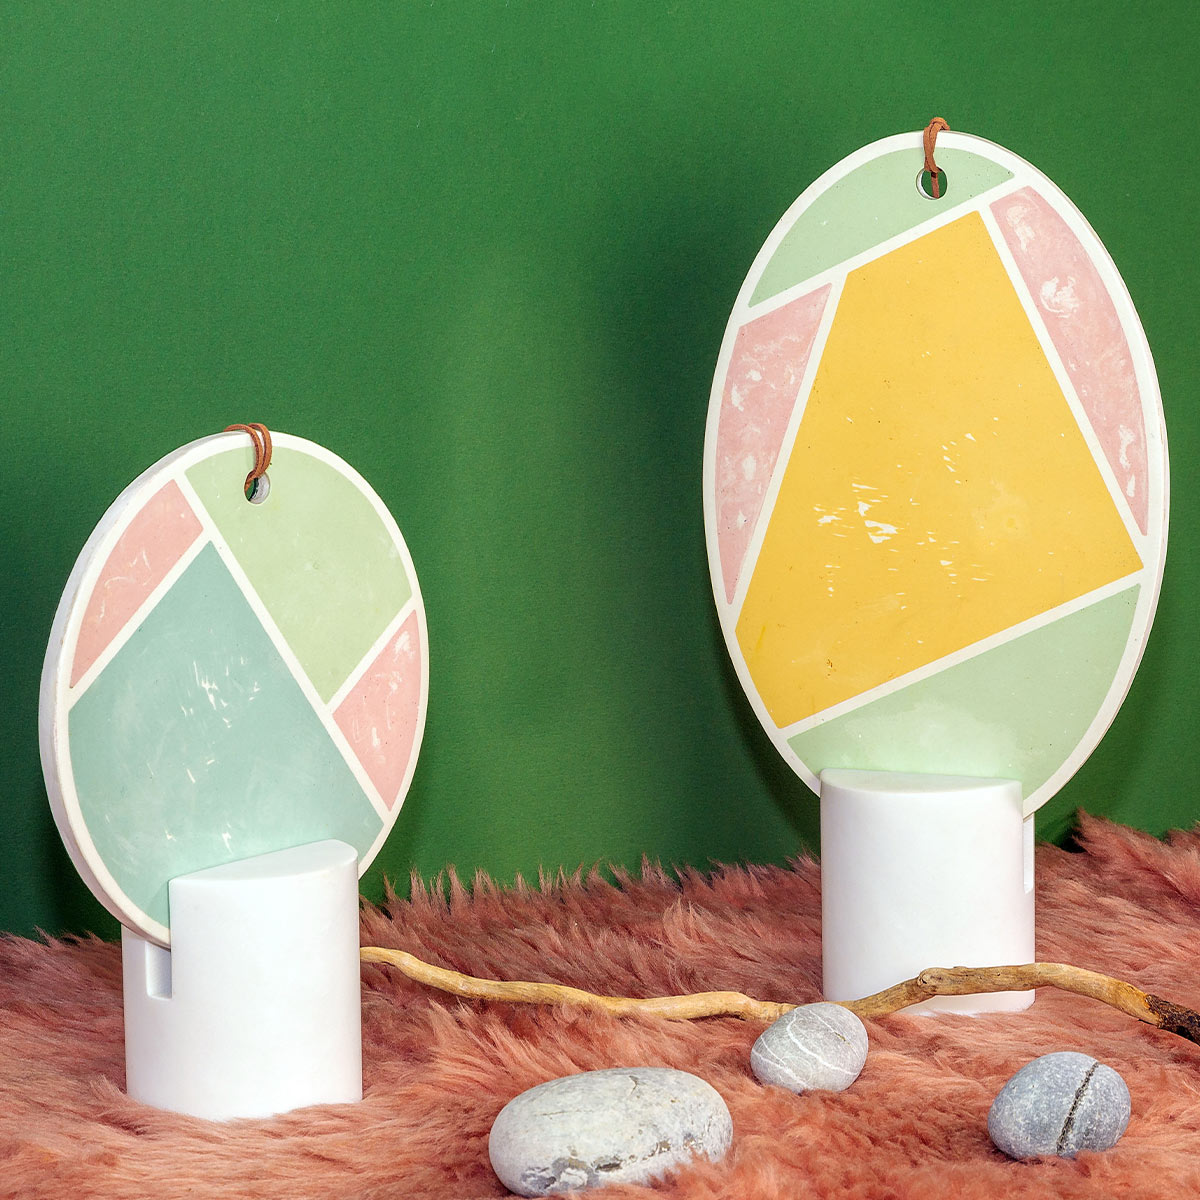 Specchio design Poudre Oval by Atelier Macramé